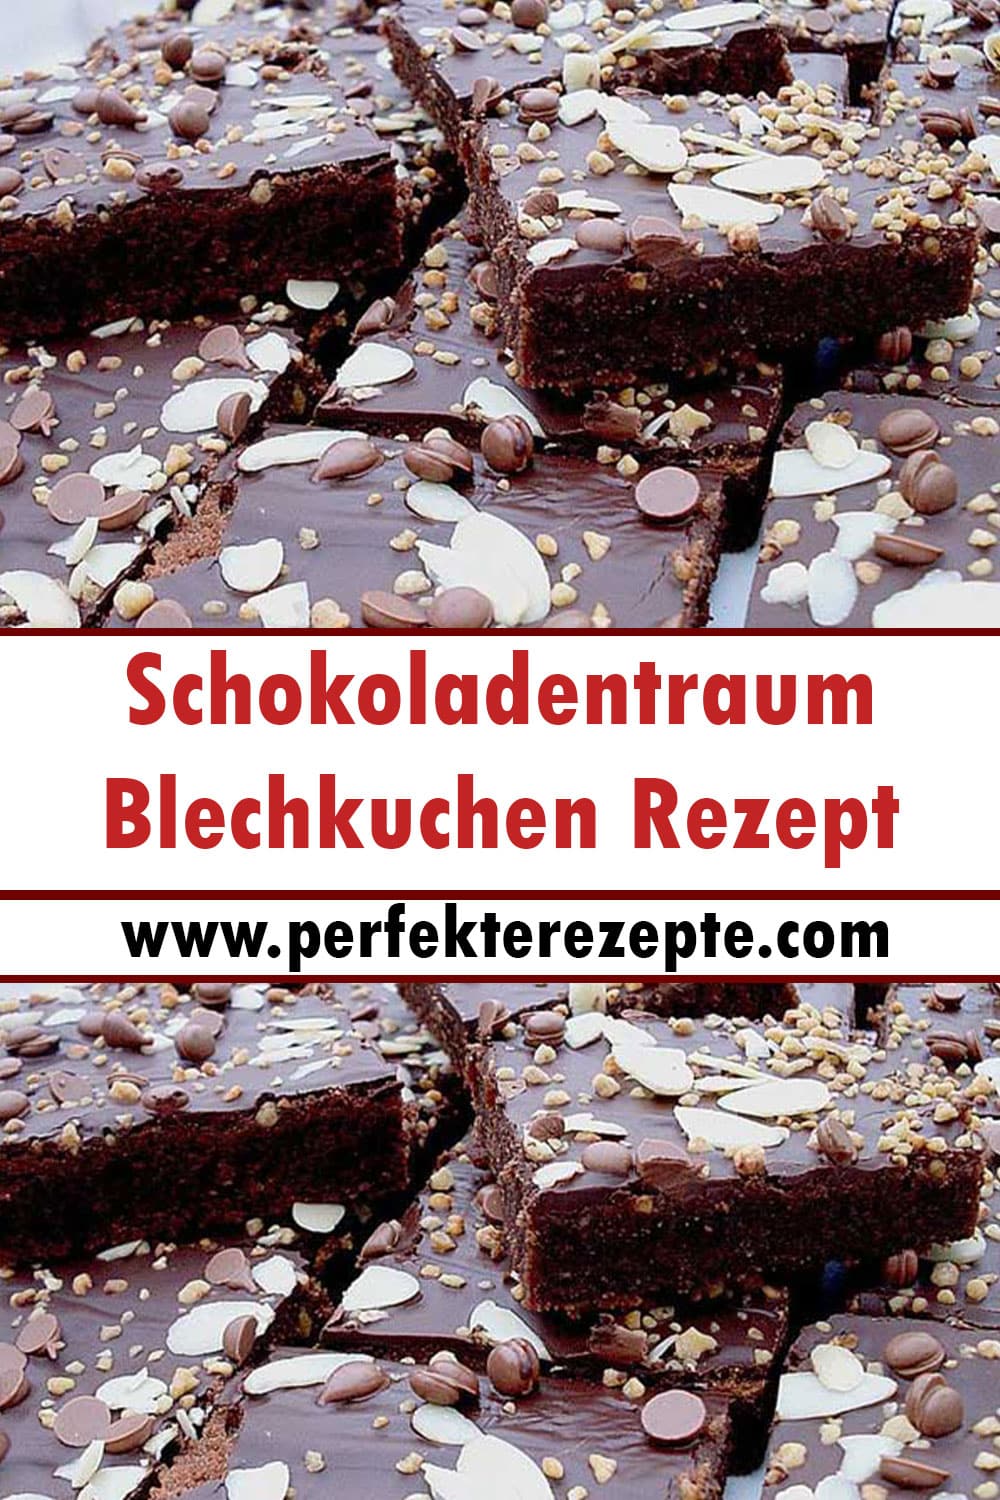 Schokoladentraum-Blechkuchen Rezept